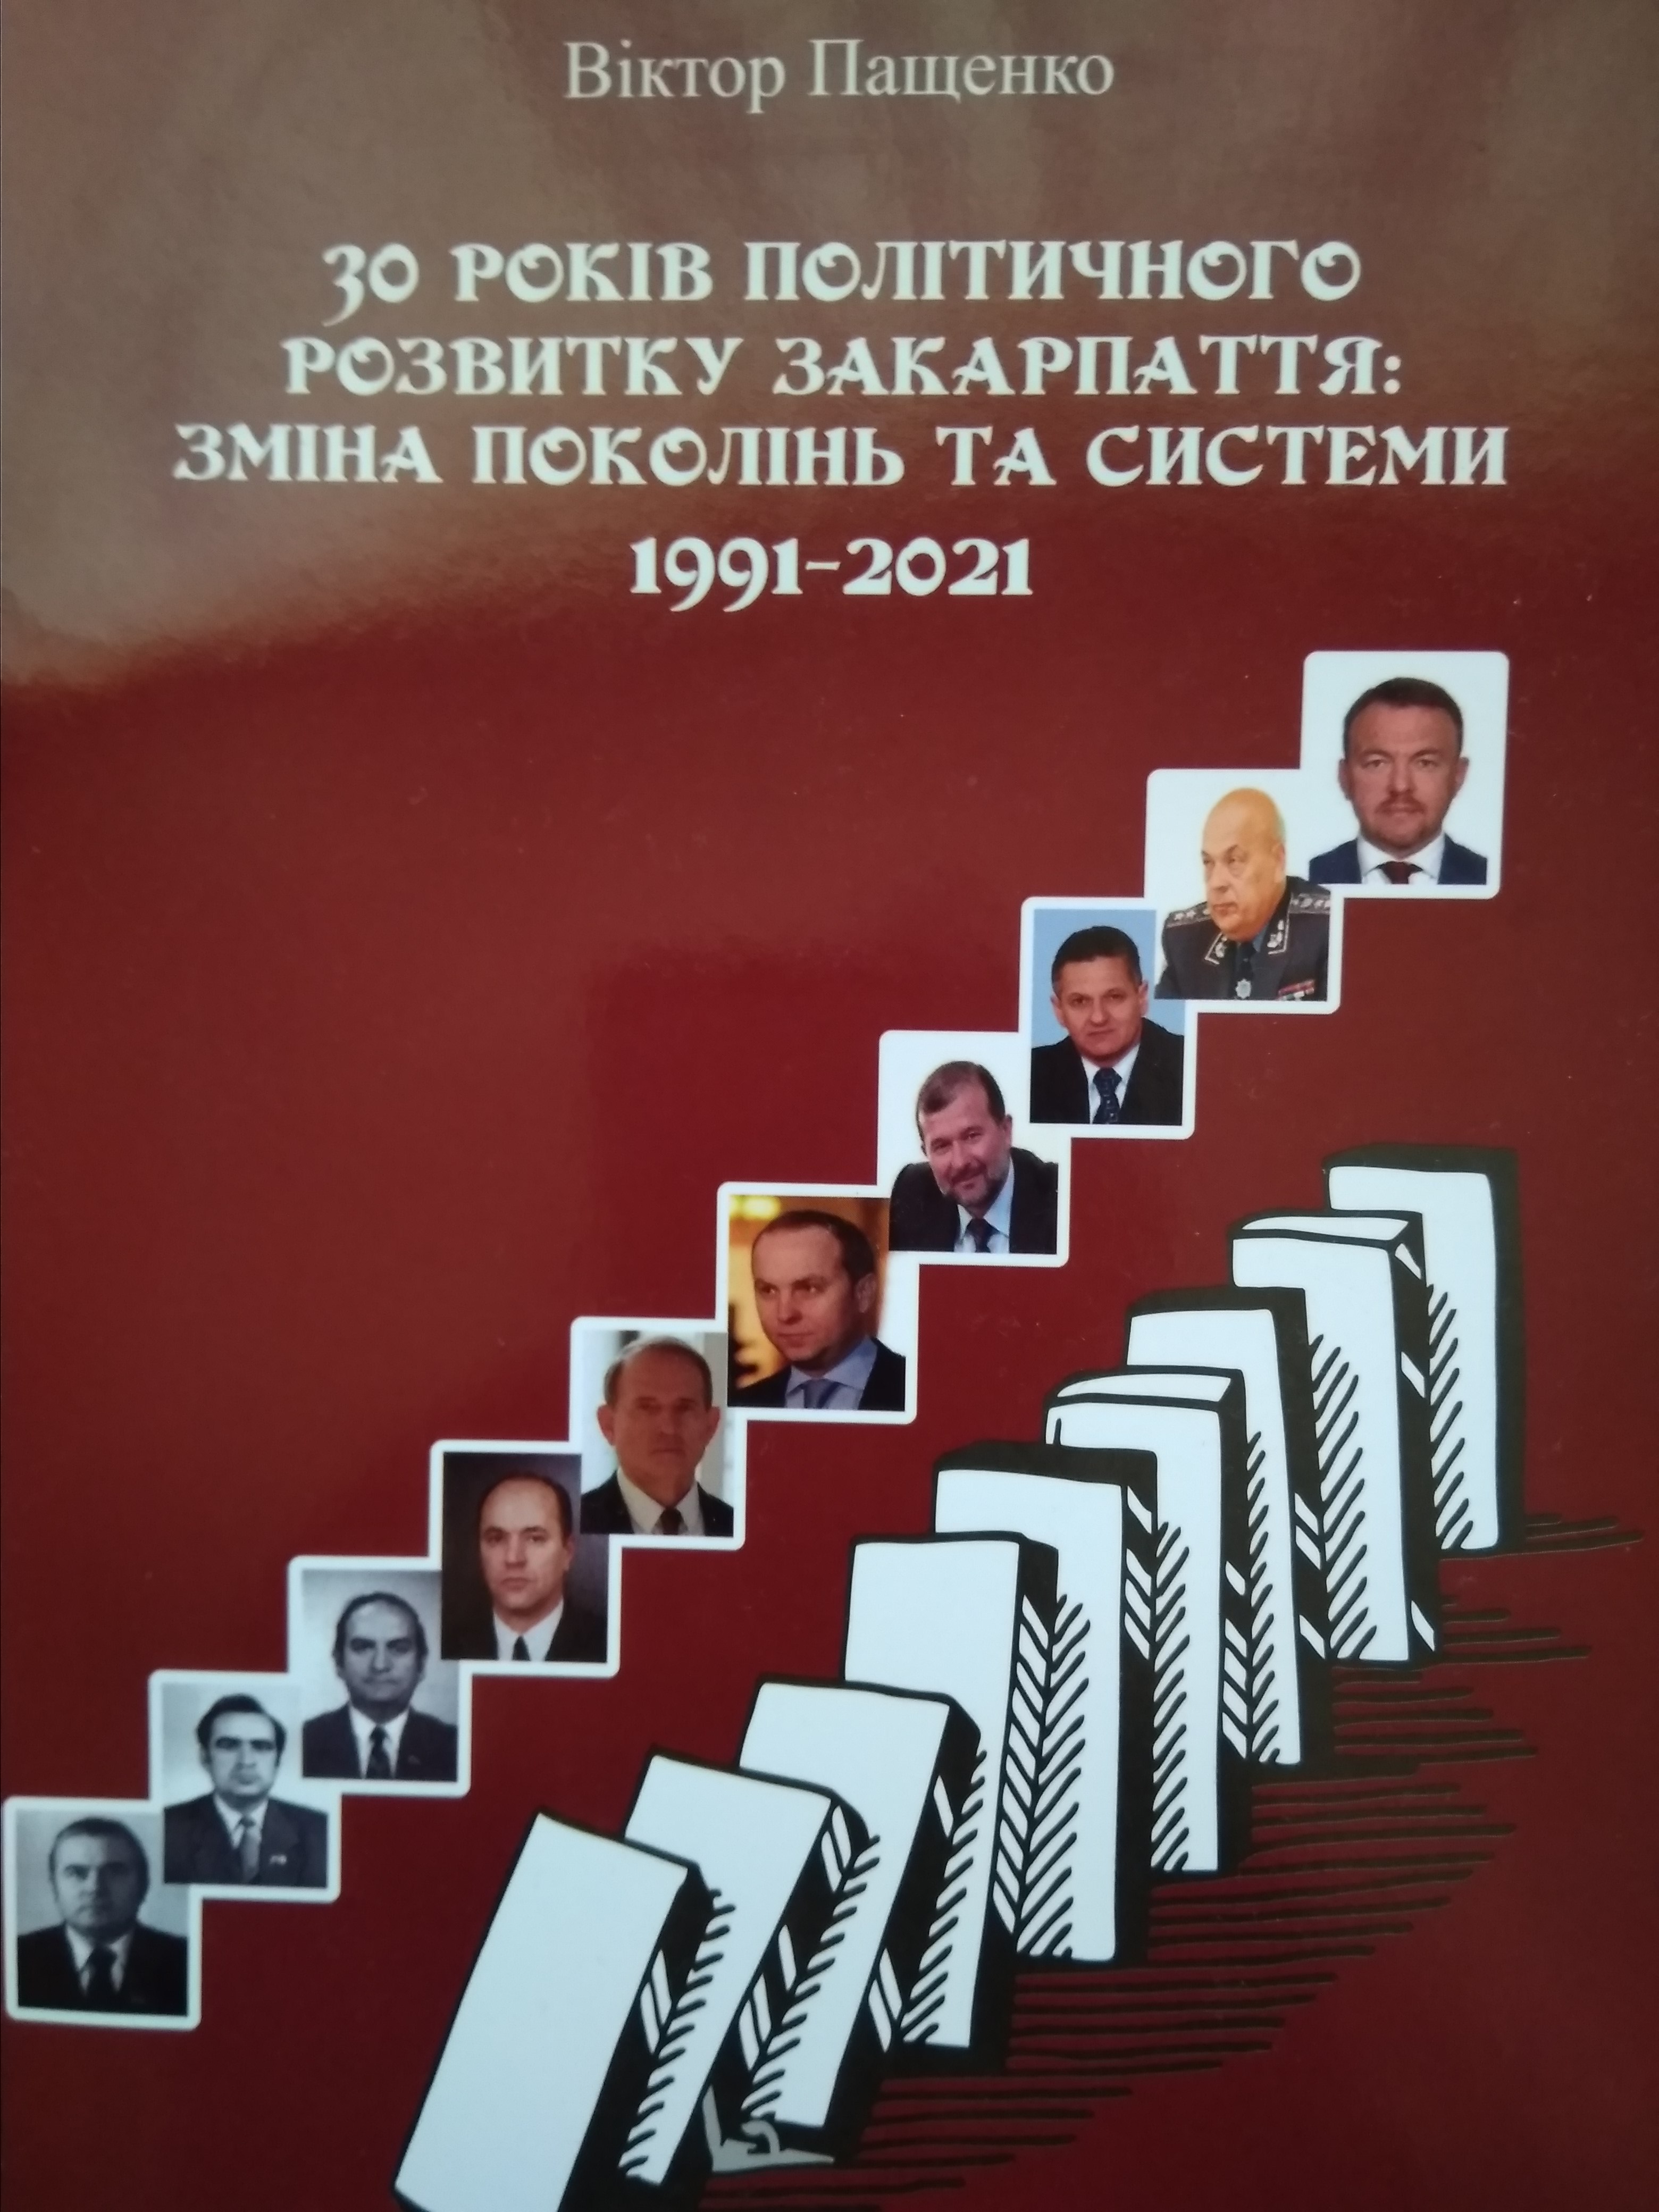 До 30-річчя Незалежності України видали книжку про 30 років політичного розвитку Закарпаття